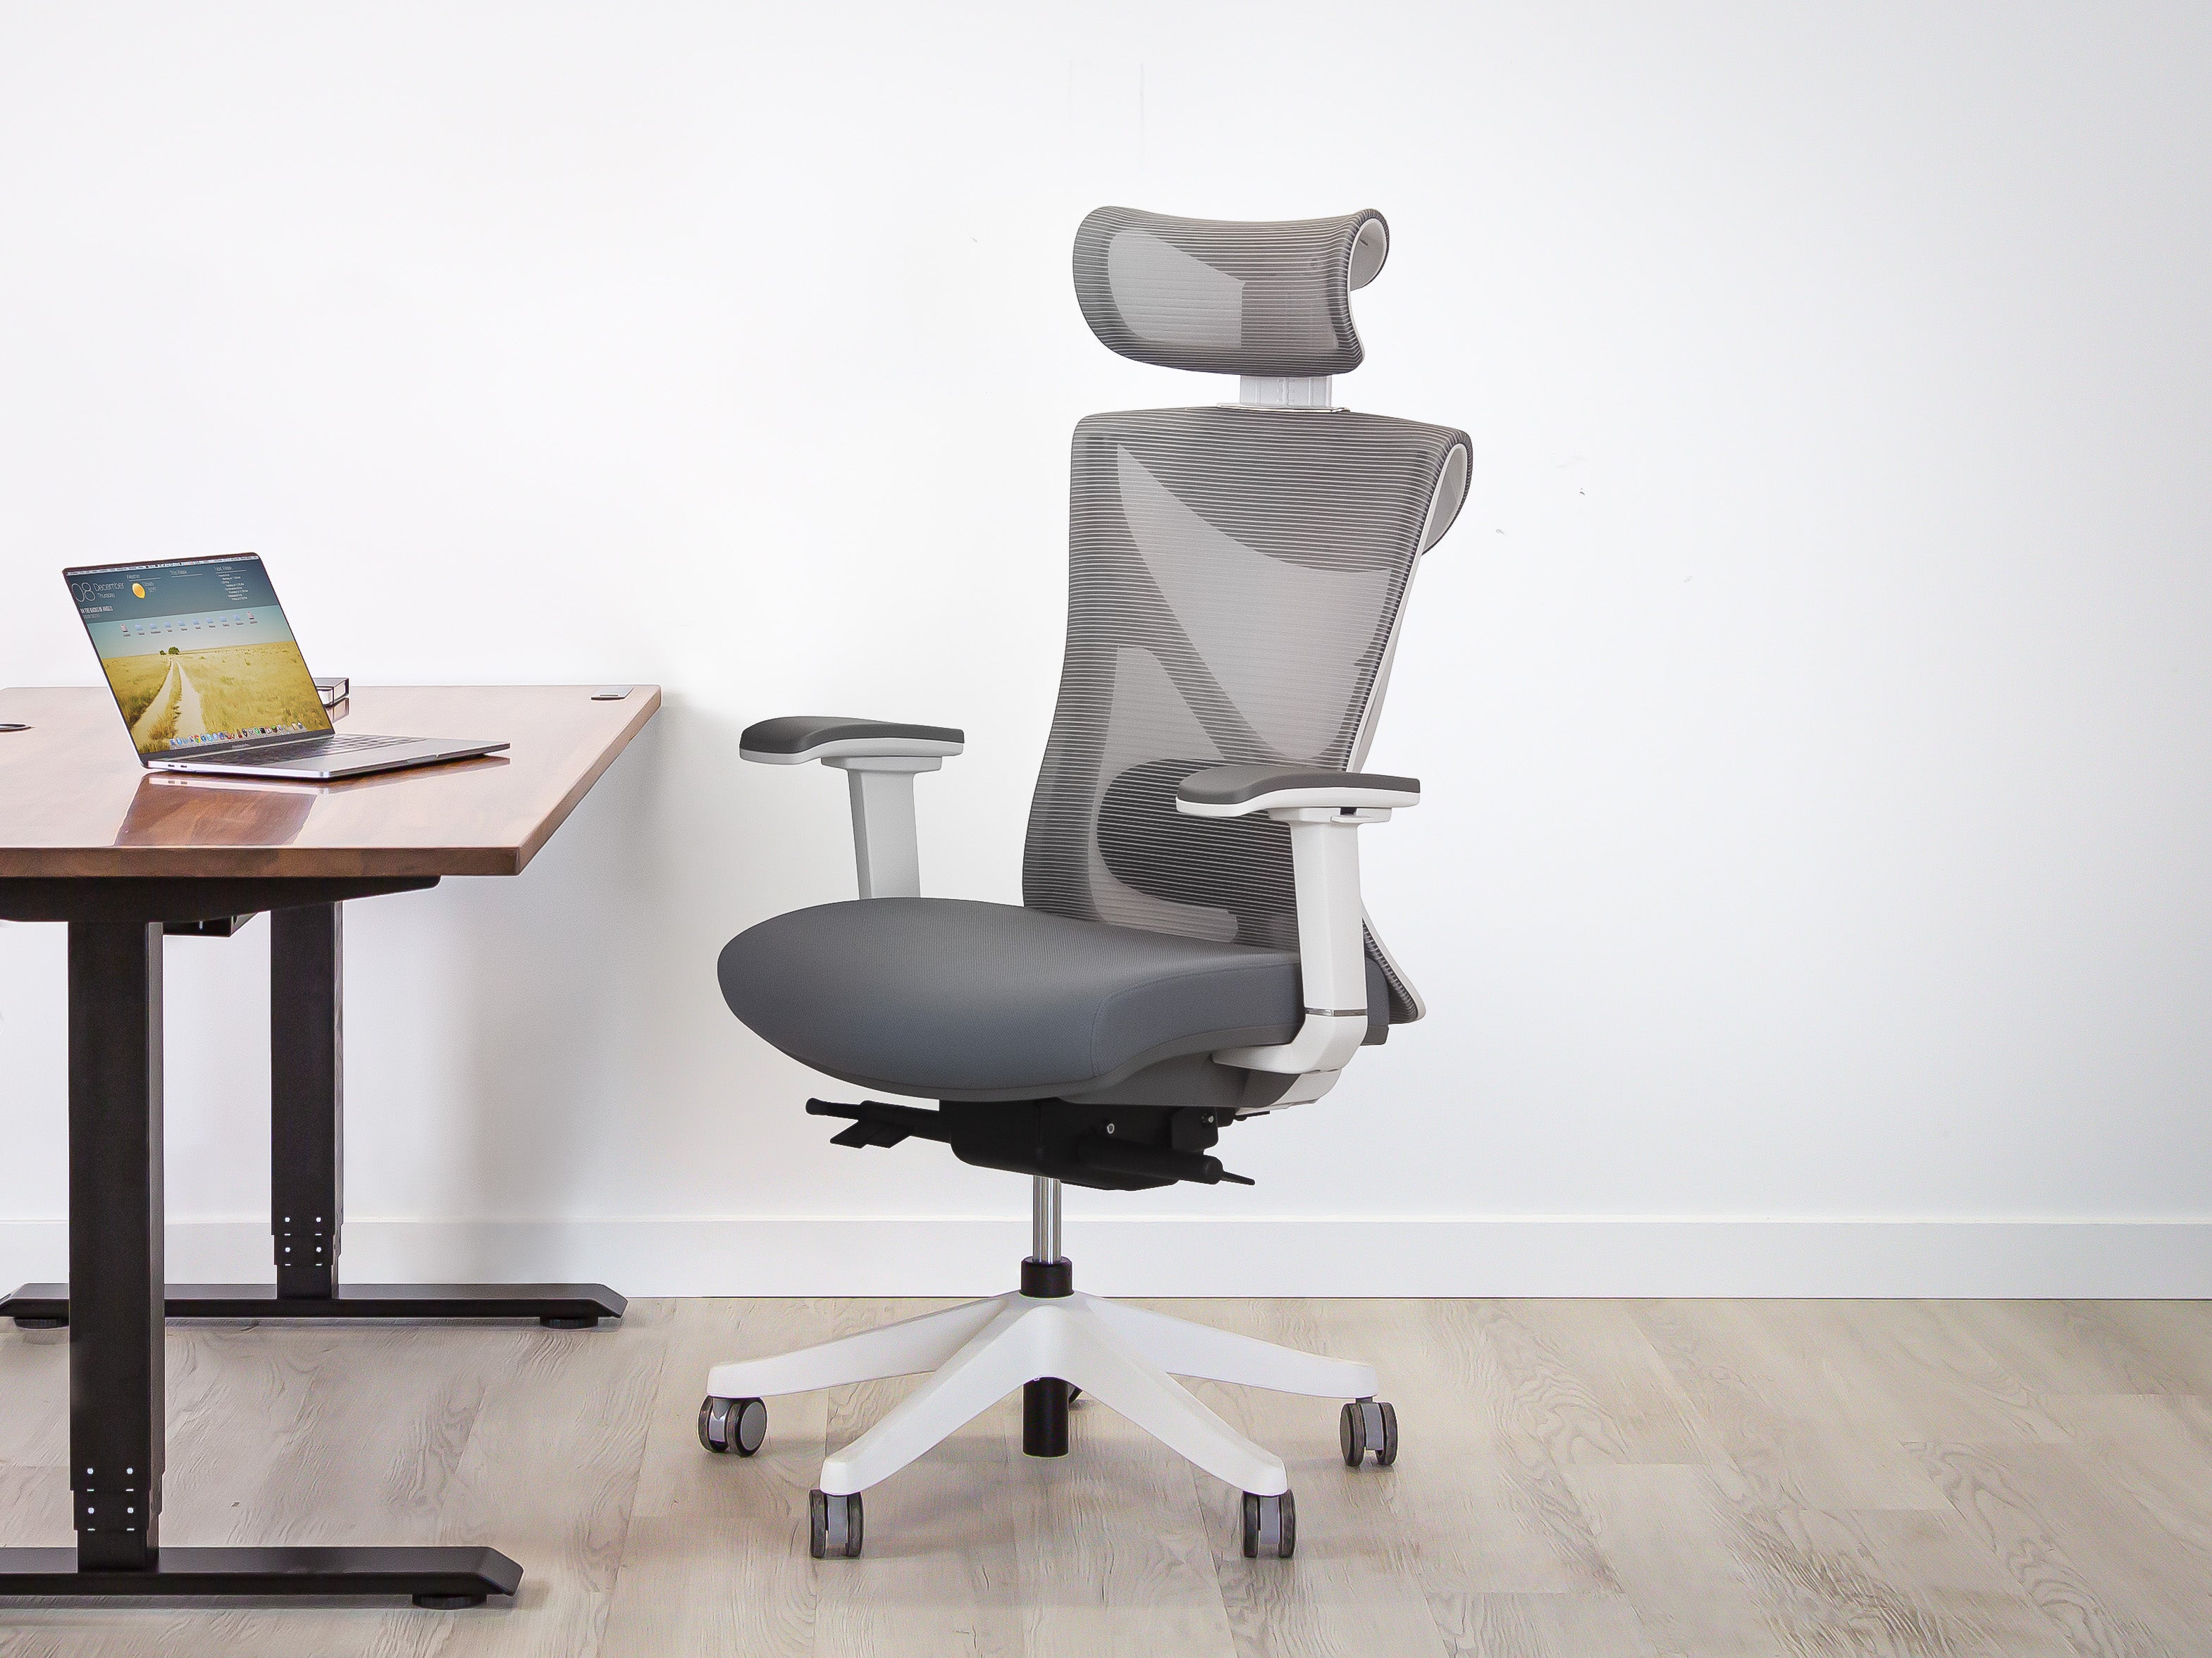 KaiChair - Ergonomic Office Chair